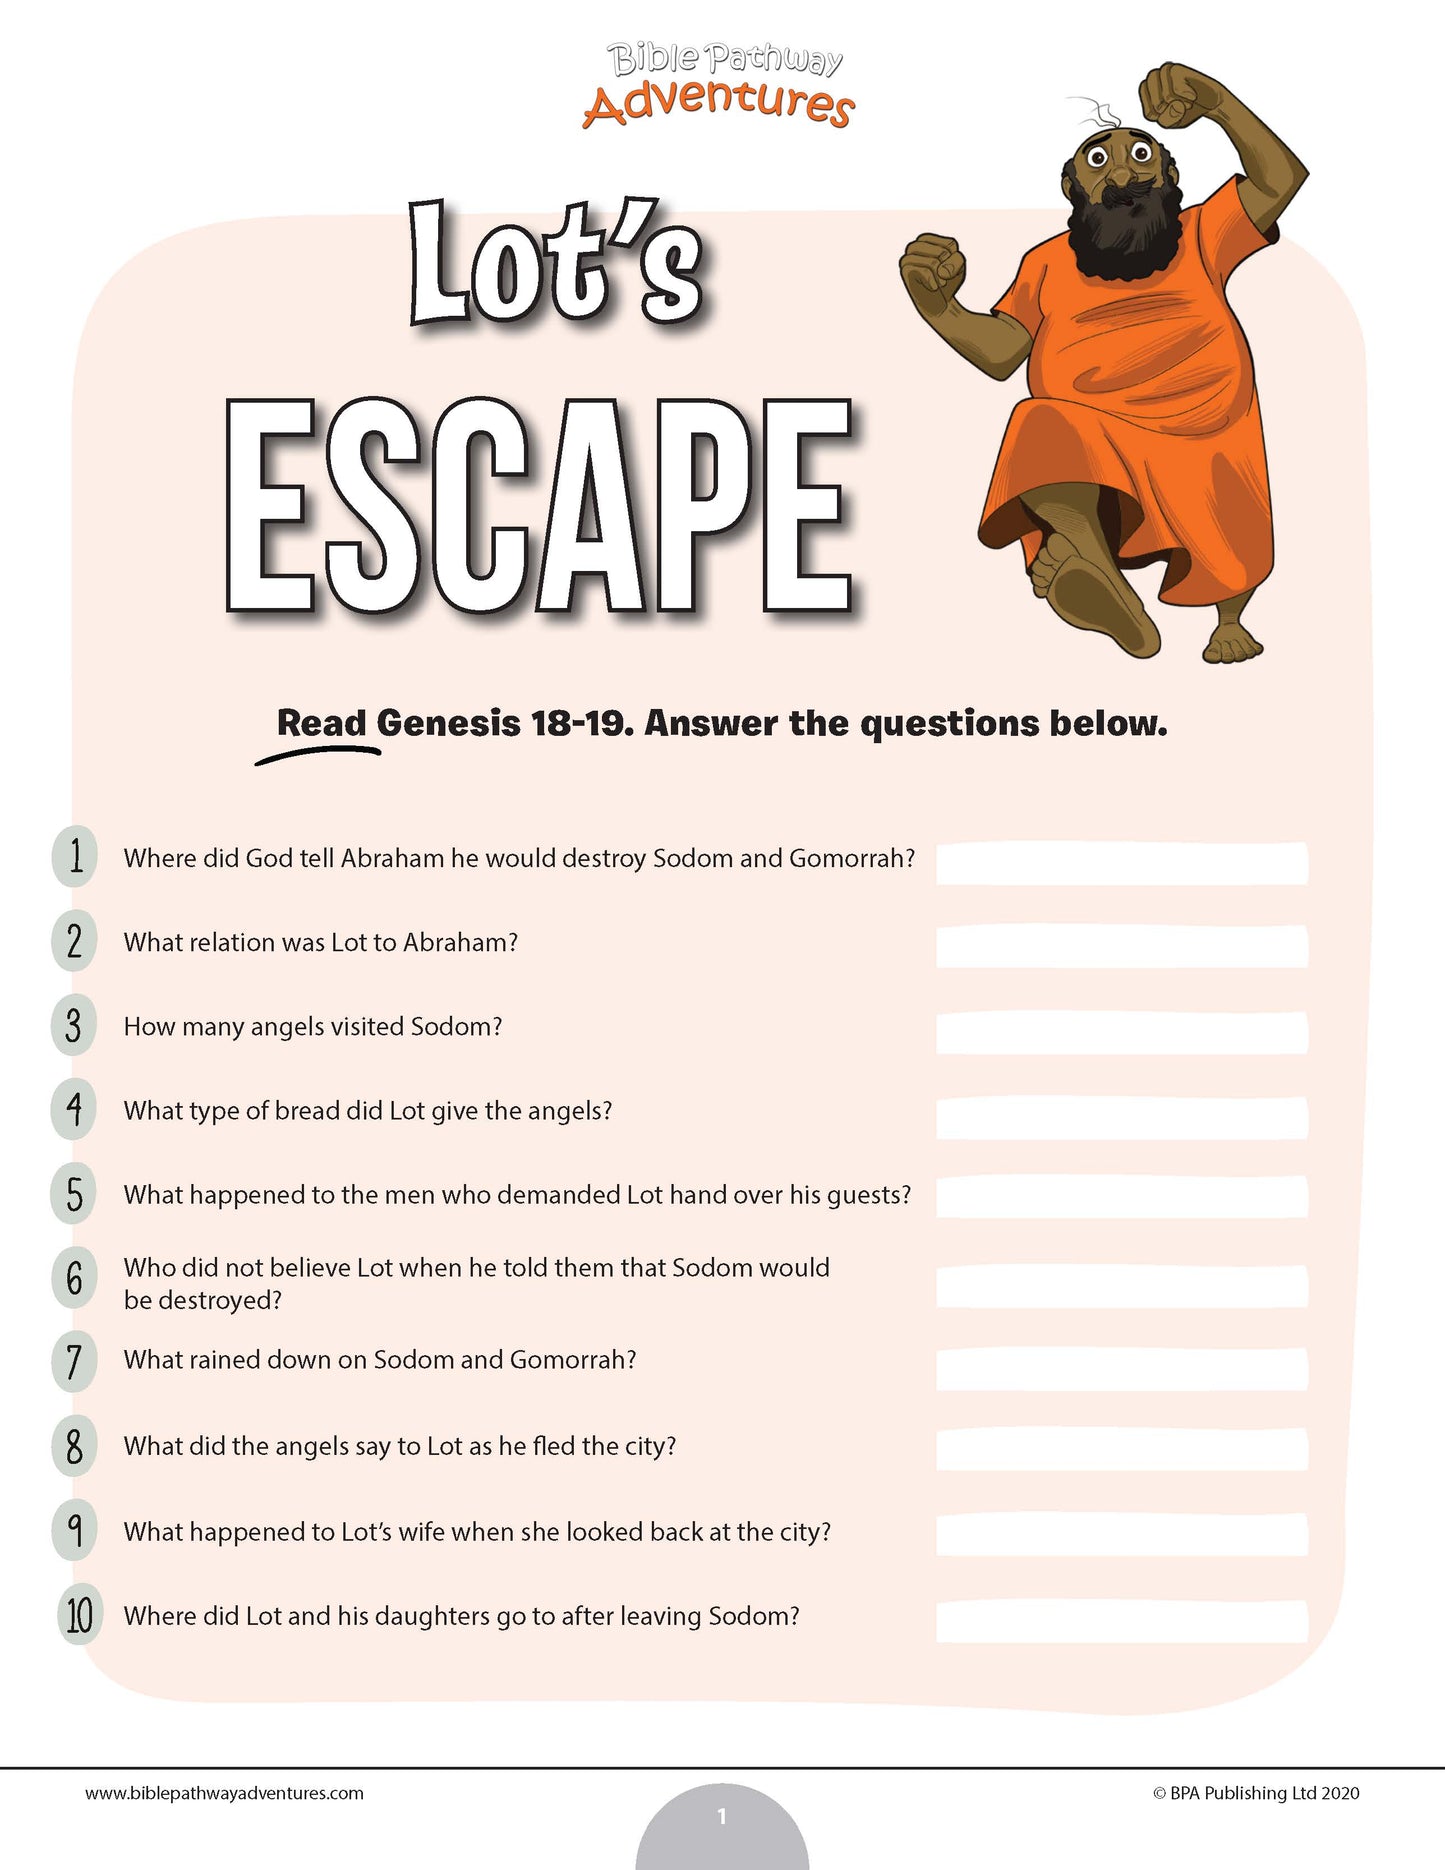 Lot's Escape Bible quiz